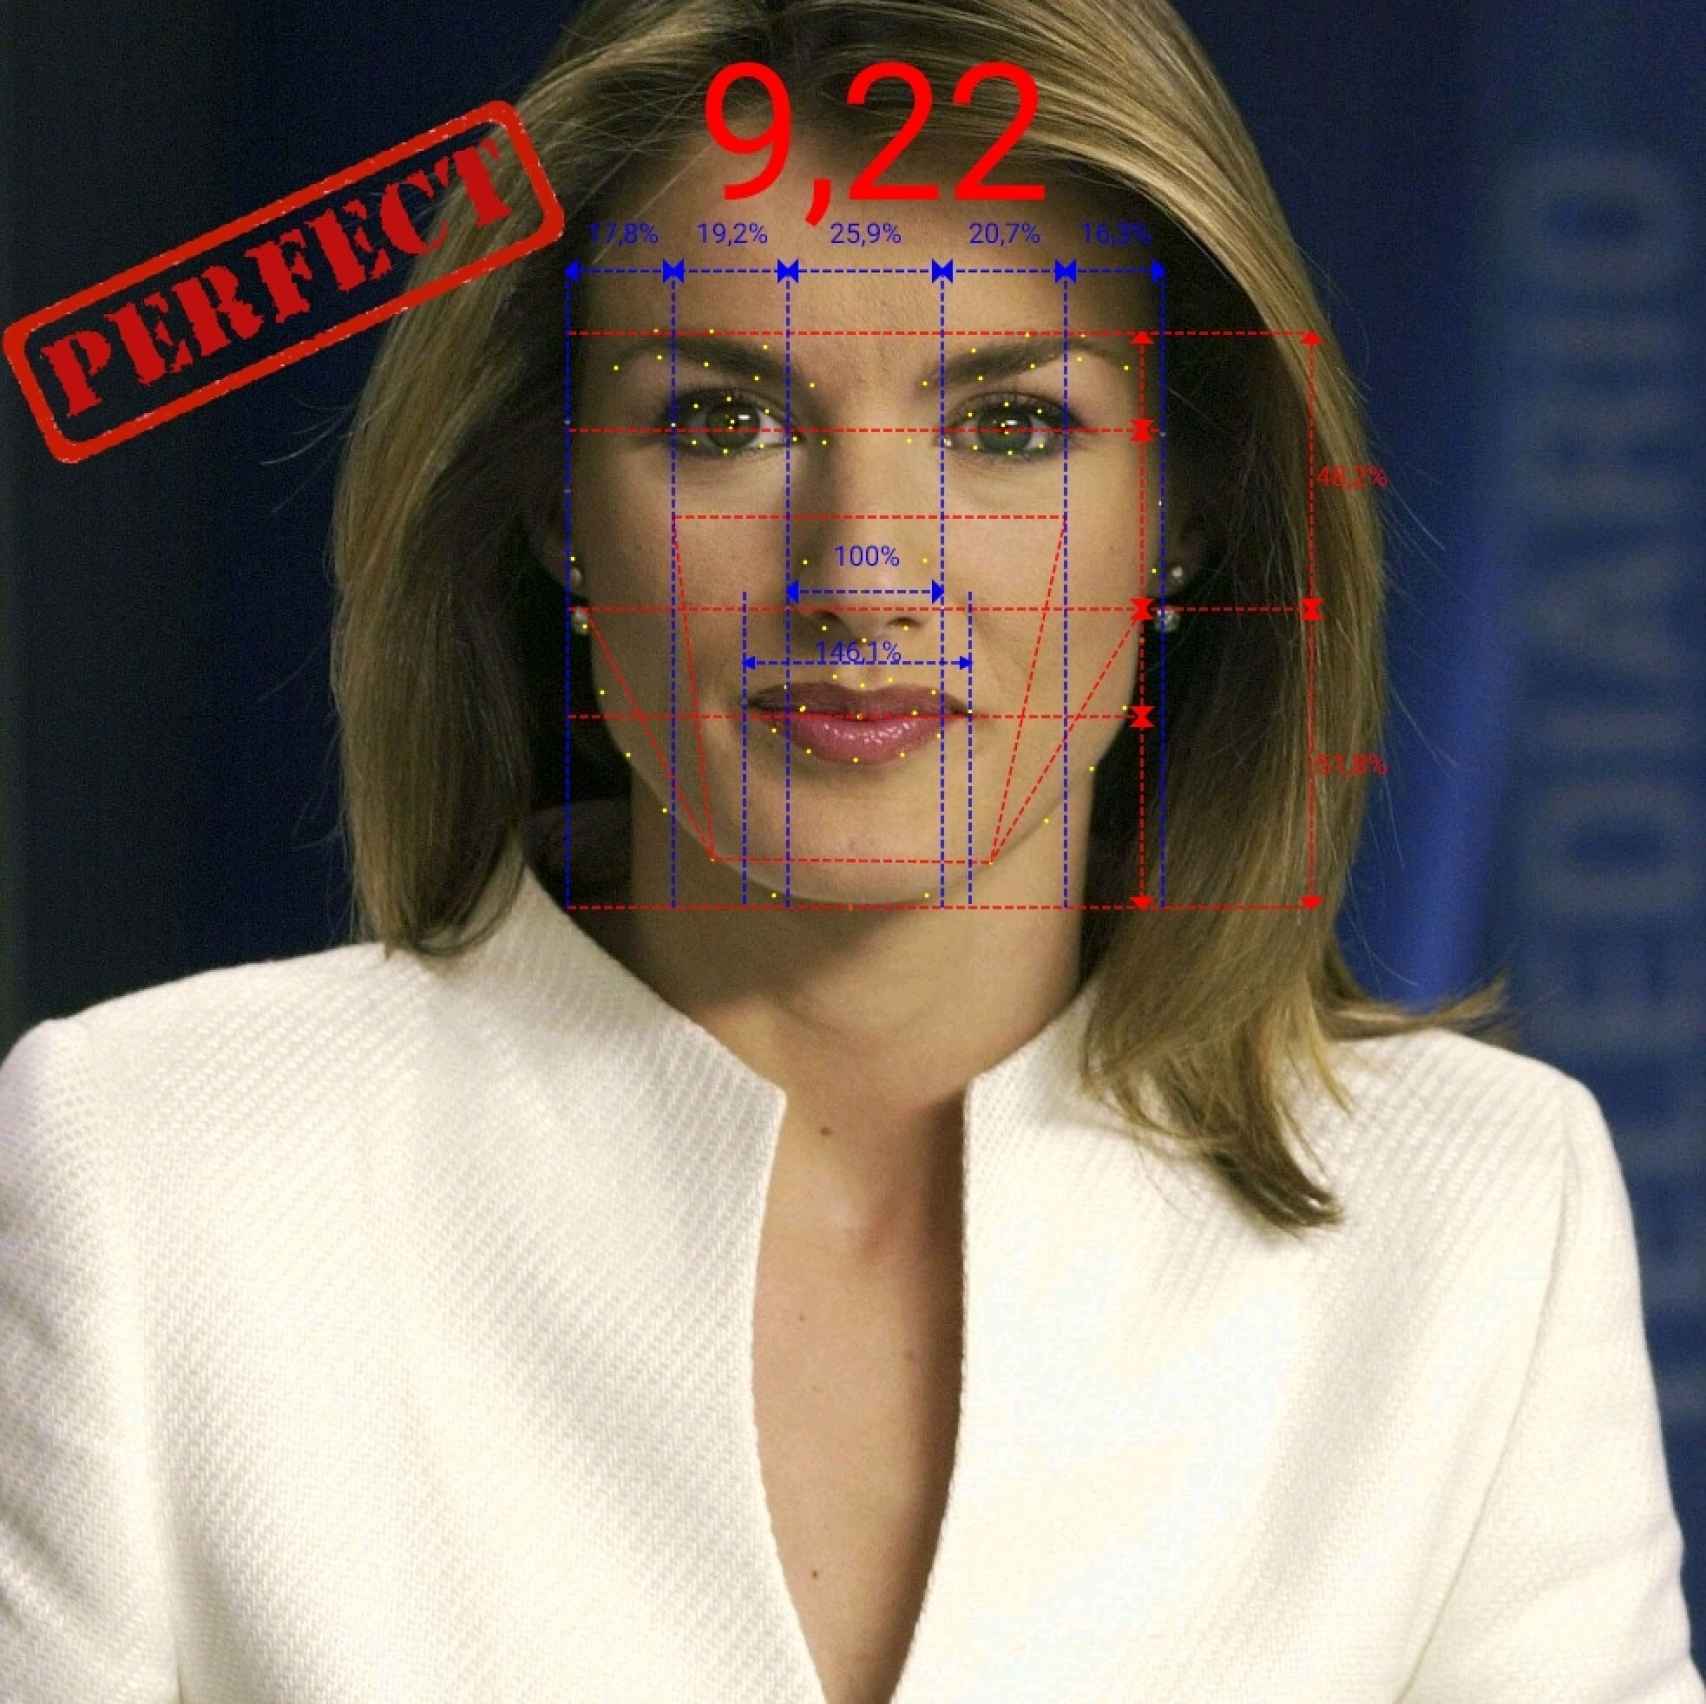 Tras analizar el rostro de Letizia en el año 2003 adquiere una calificación de 9,22 sobre 10 en armonía facial.